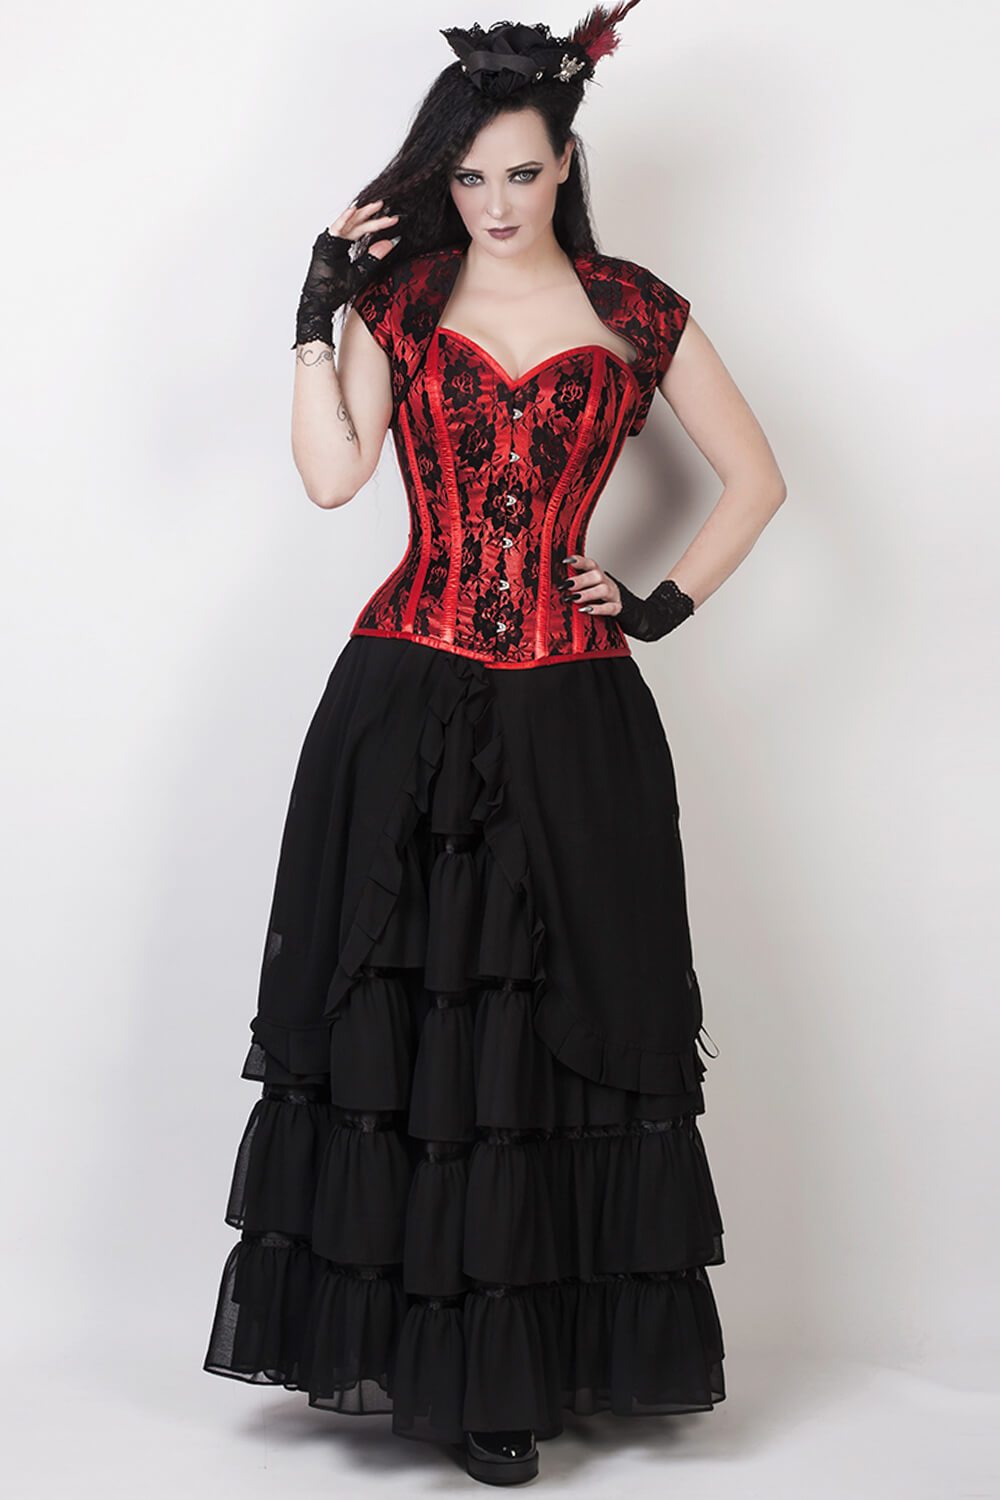 Black Long Victorian Inspired Skirt